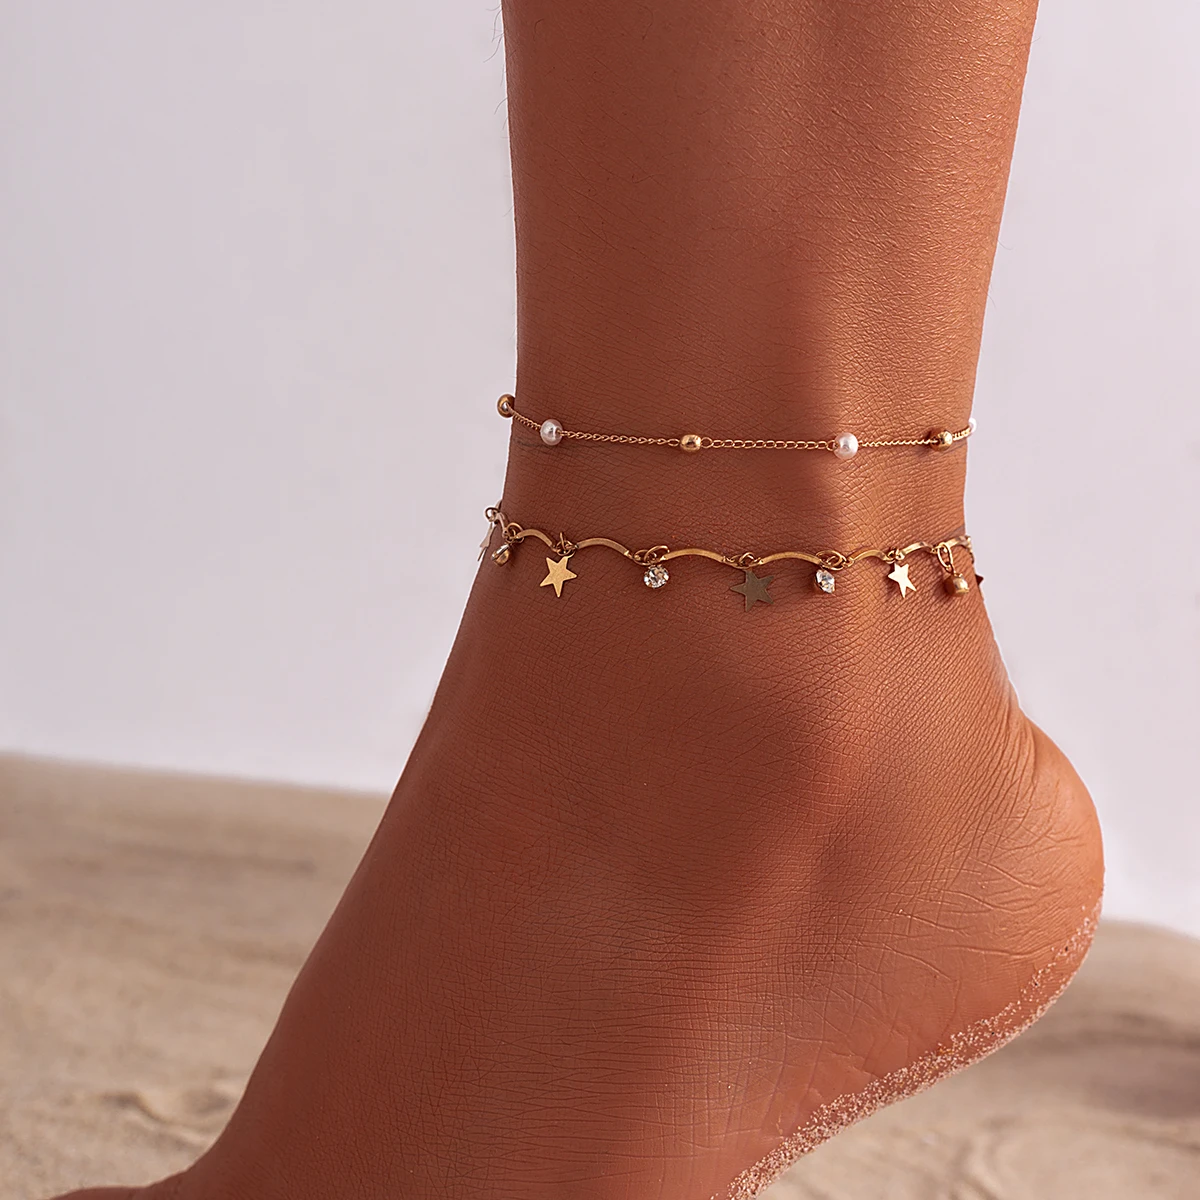 

Boho Imitation Pearl Foot Chain Anklet Bracelet for Women Summer Tassel Star Crystal Ball Pendant Ankle Sandal Barefoot Jewelry